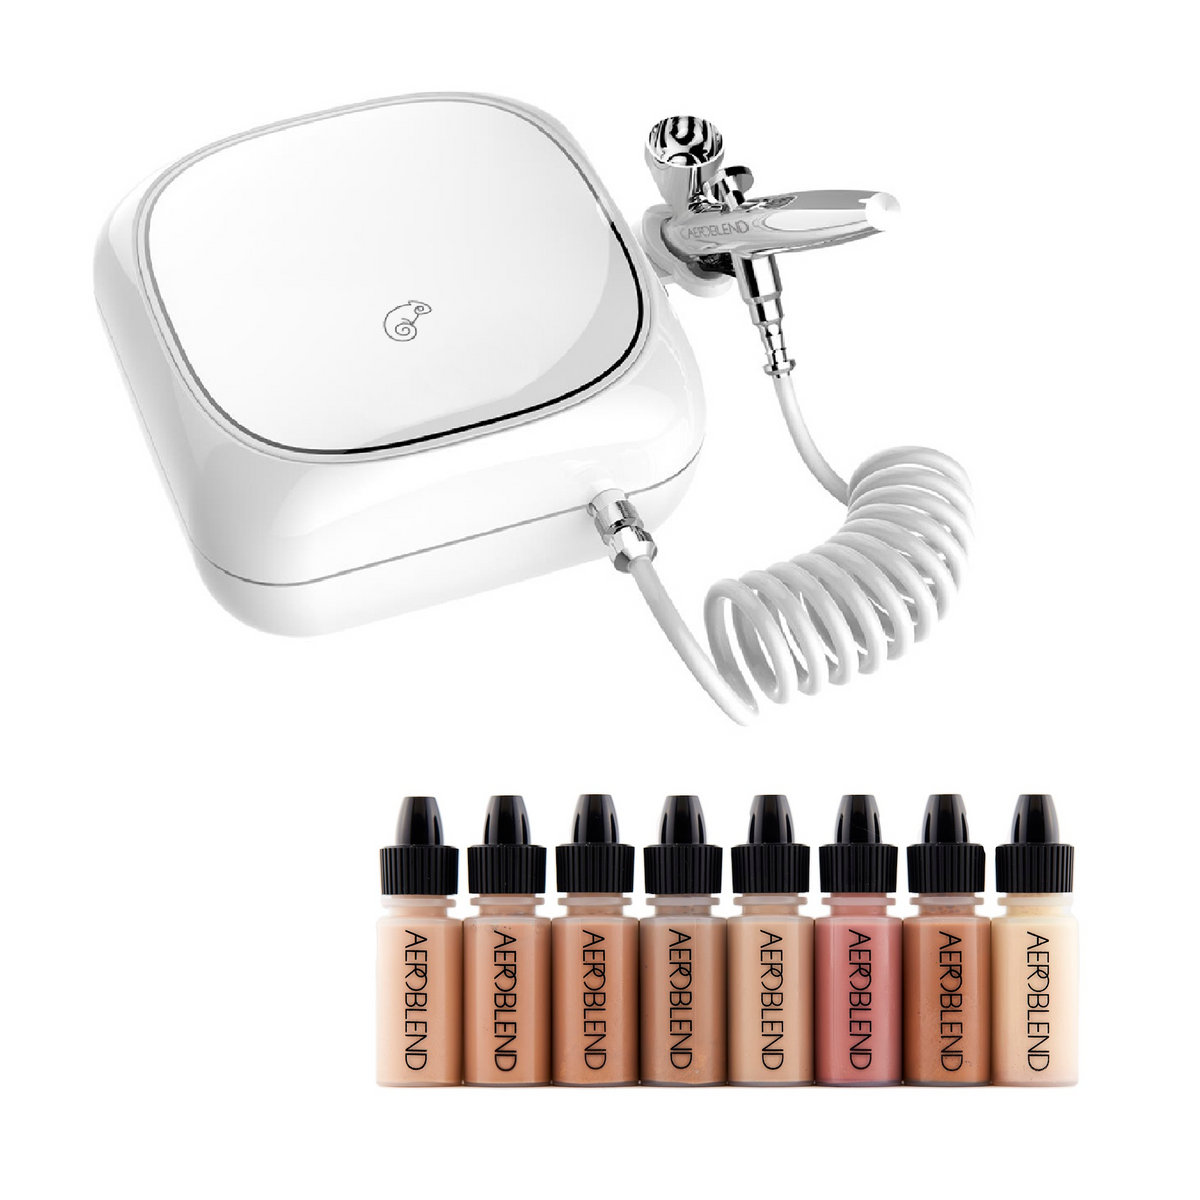 Portable Airbrush Makeup Starter Kit